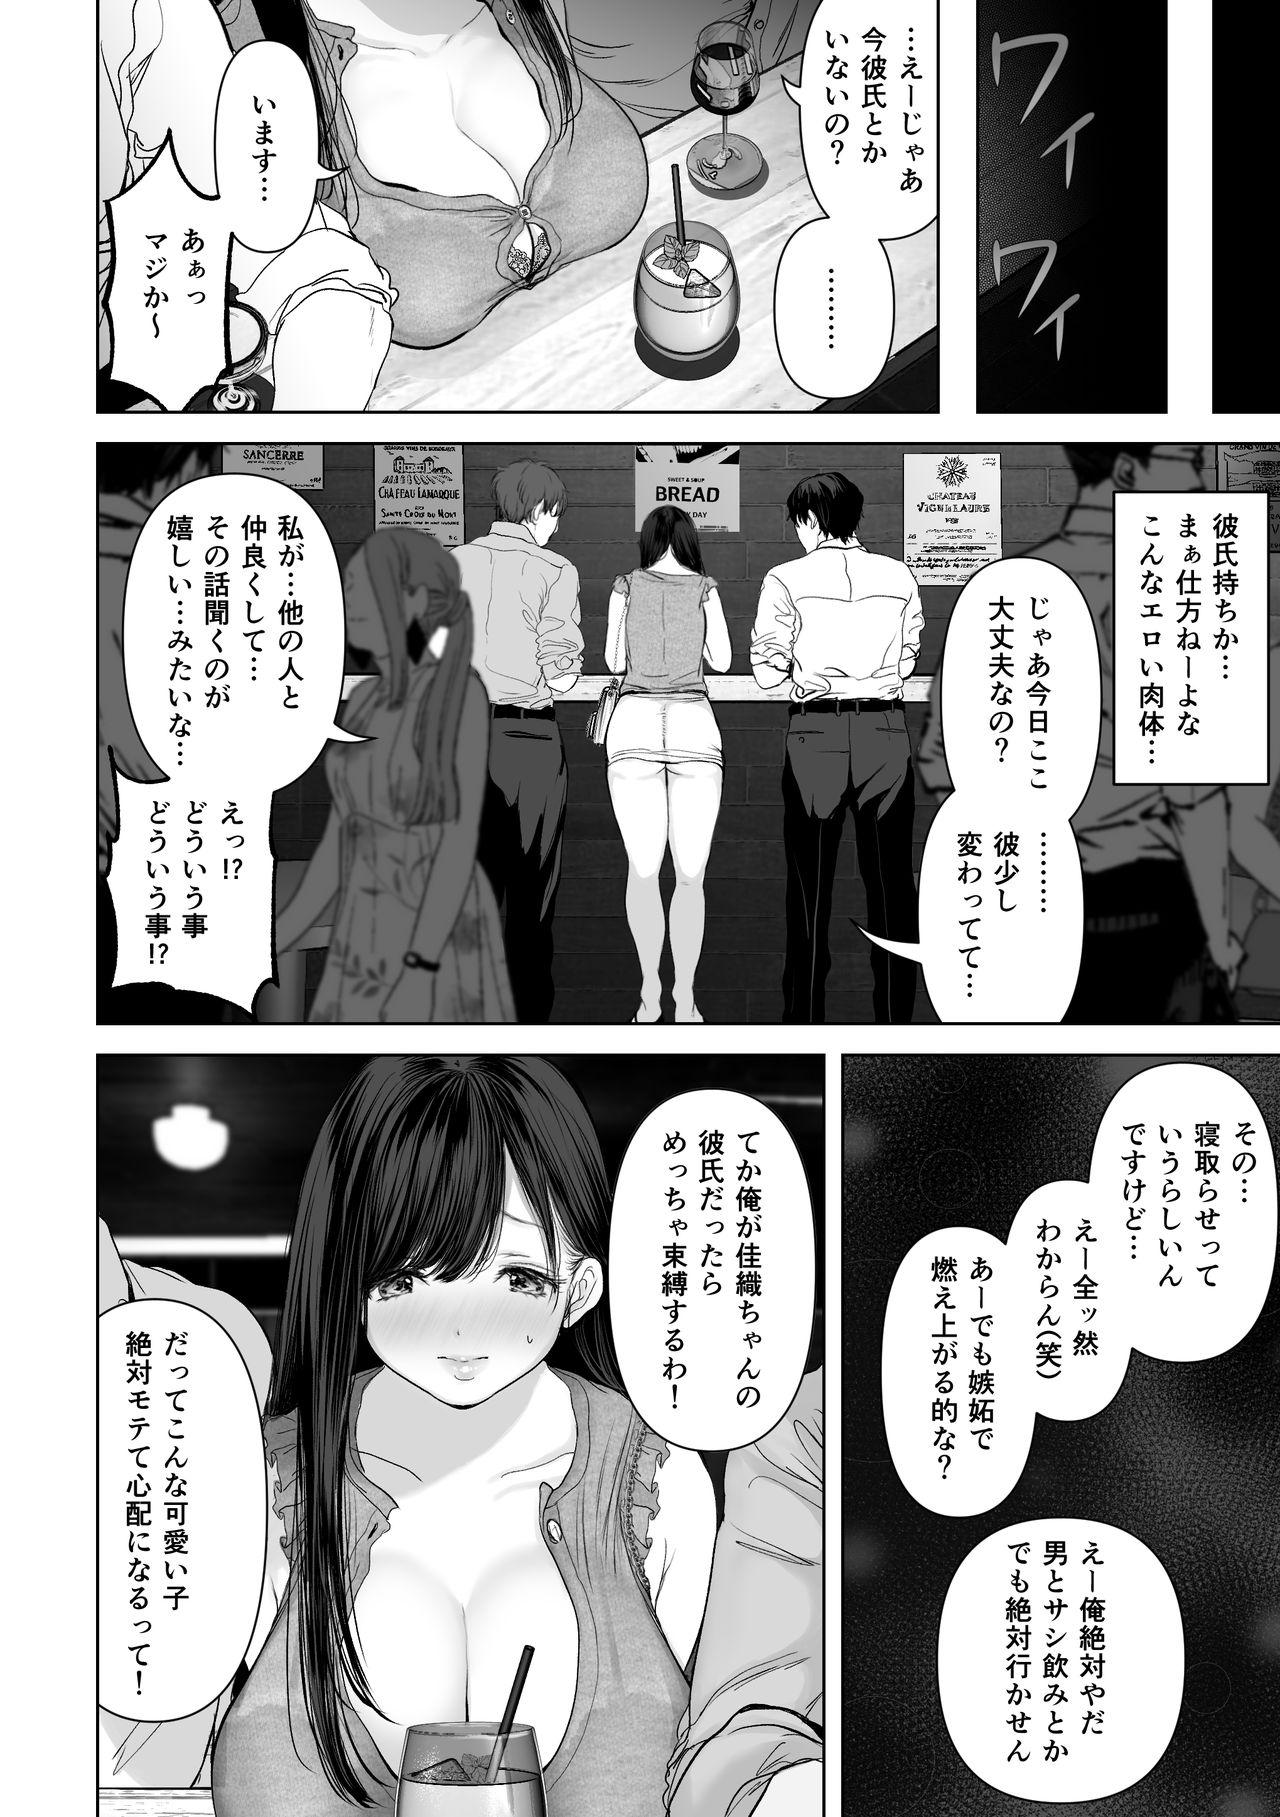 Young Anata ga Nozomu nara 2 - Original Titties - Page 5